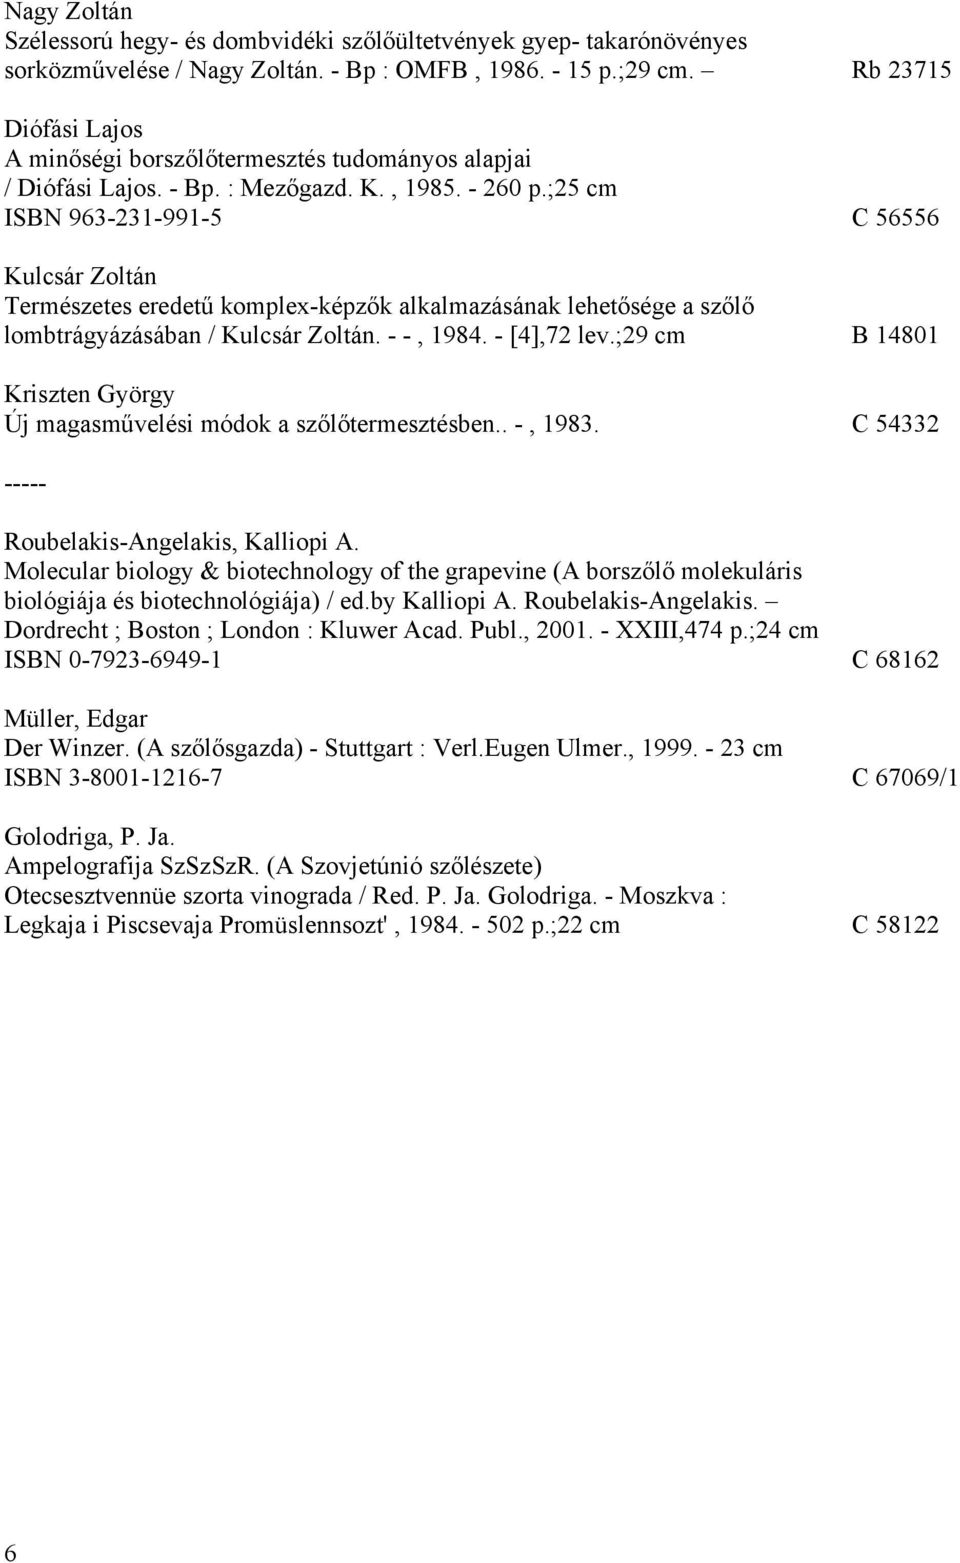 ;25 cm ISBN 963-231-991-5 C 56556 Kulcsár Zoltán Természetes eredetű komplex-képzők alkalmazásának lehetősége a szőlő lombtrágyázásában / Kulcsár Zoltán. - -, 1984. - [4],72 lev.